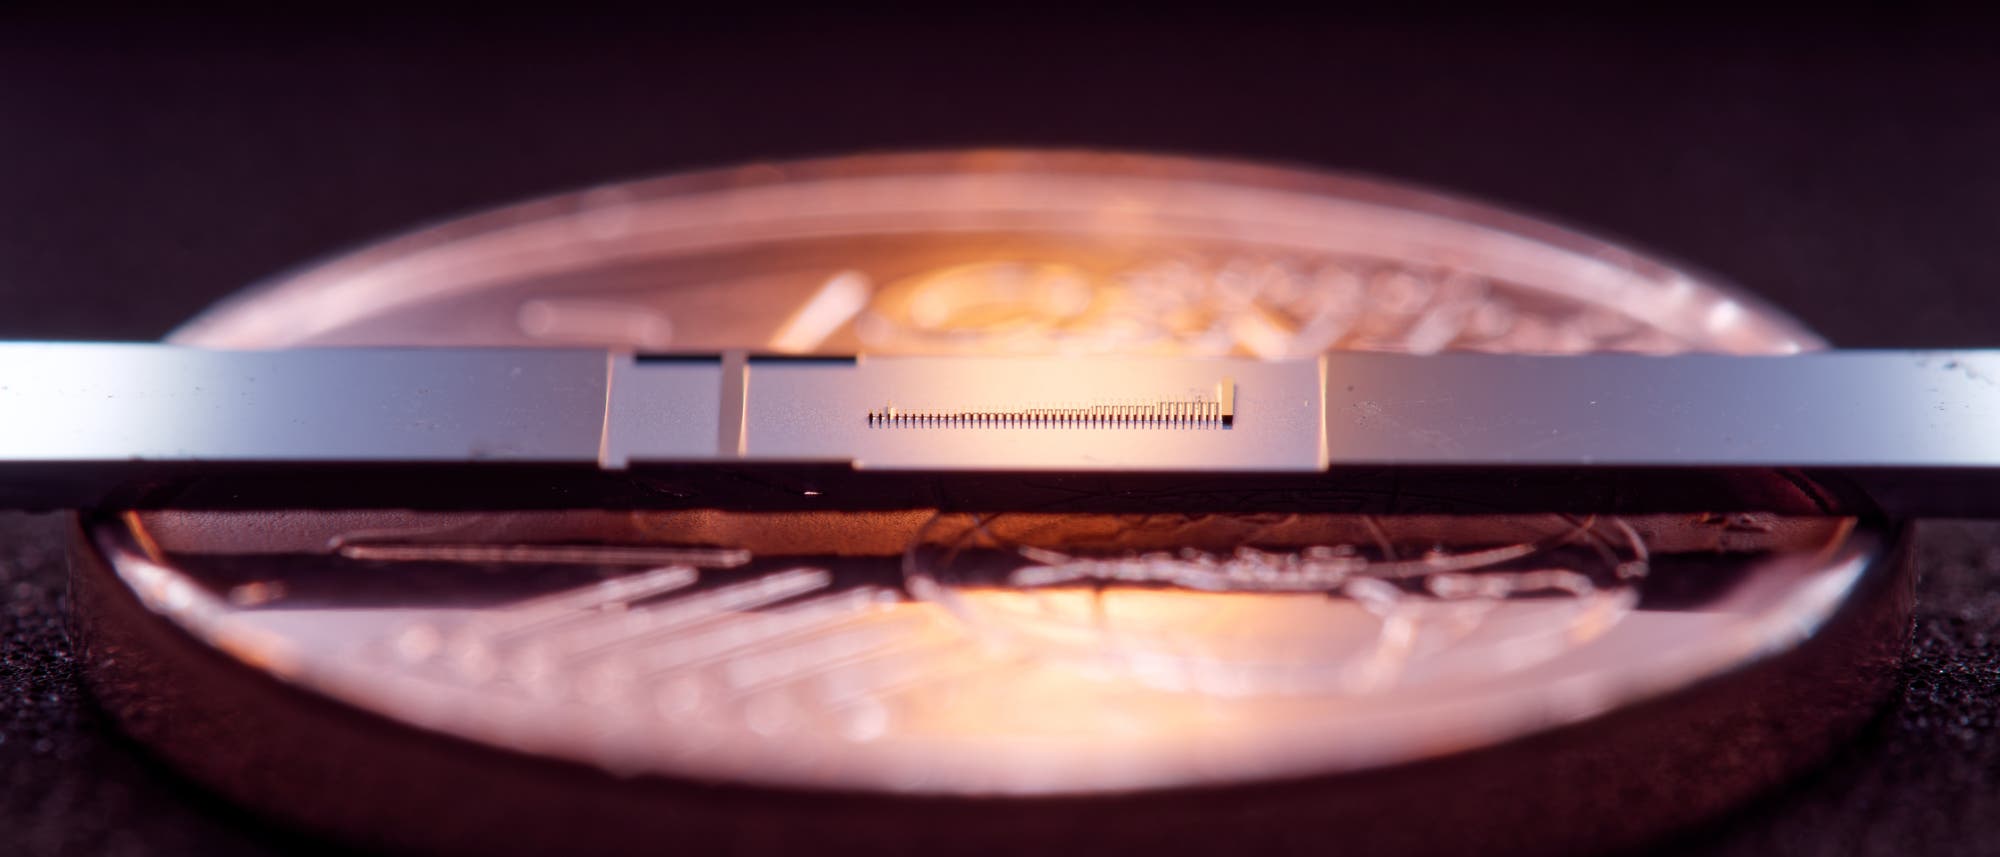 Der Mini-Teilchenbeschleuniger im Vergleich zu einer 1-Cent-Münze